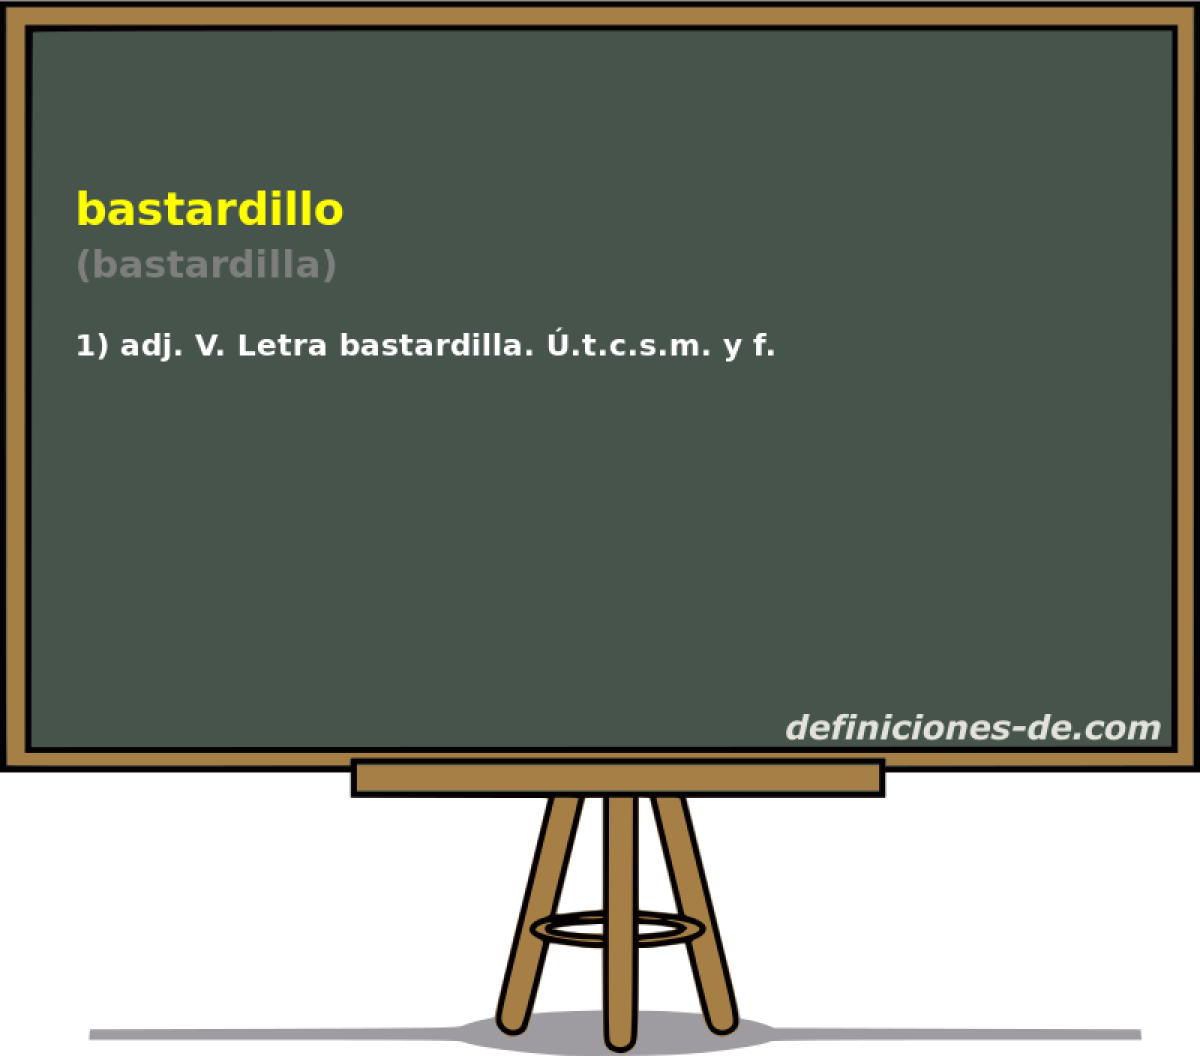 bastardillo (bastardilla)